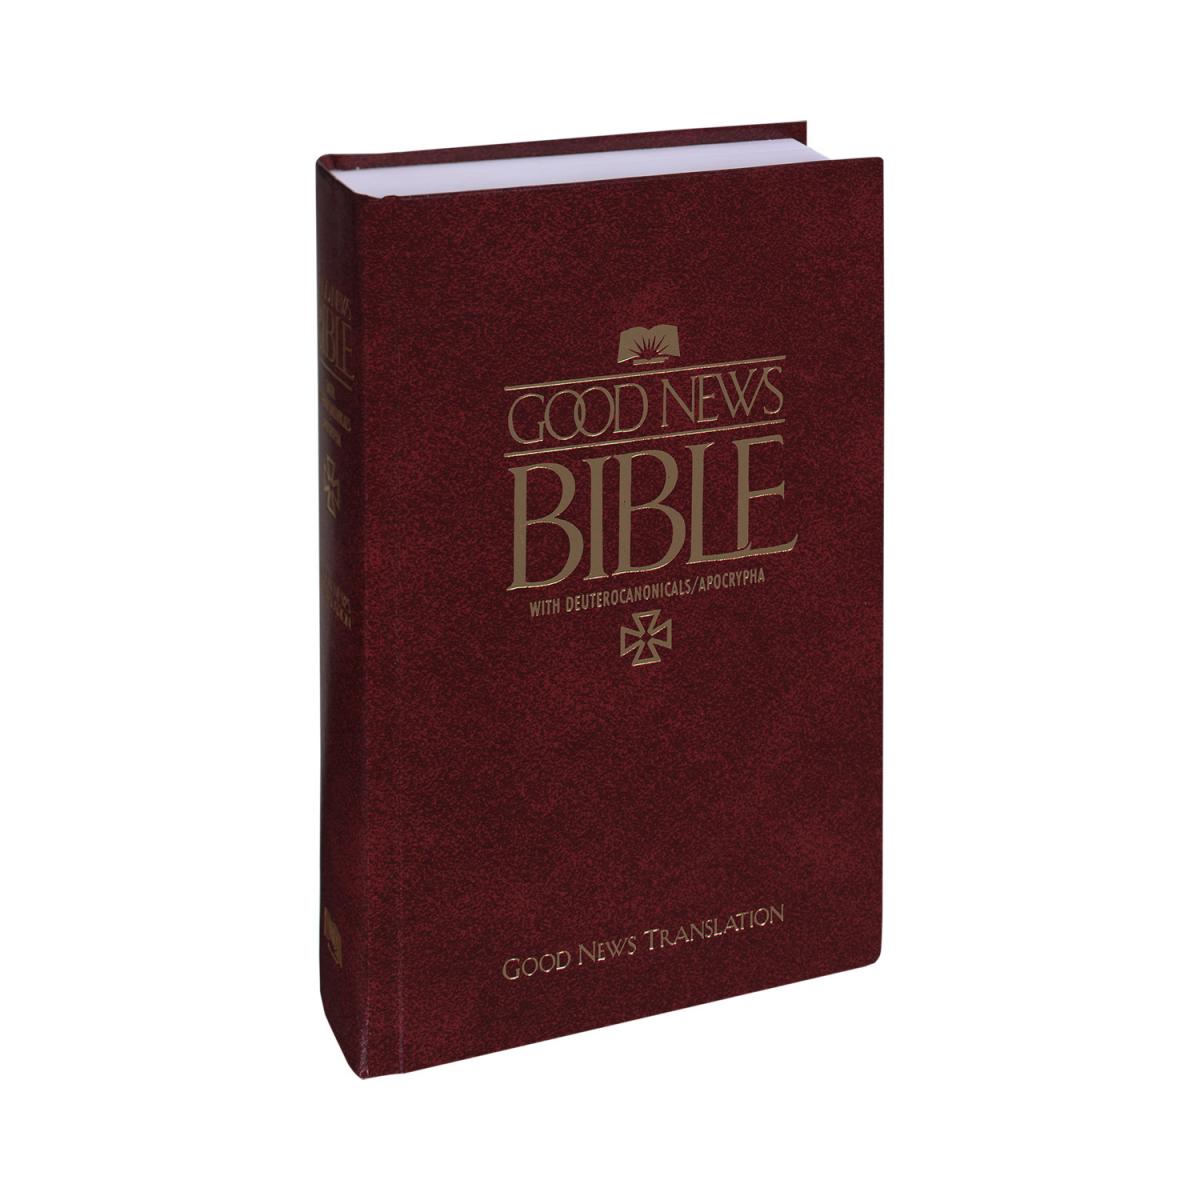 Bíblia Boas Novas GNT com Deuterocanônicos e Imprimatur (Católico)